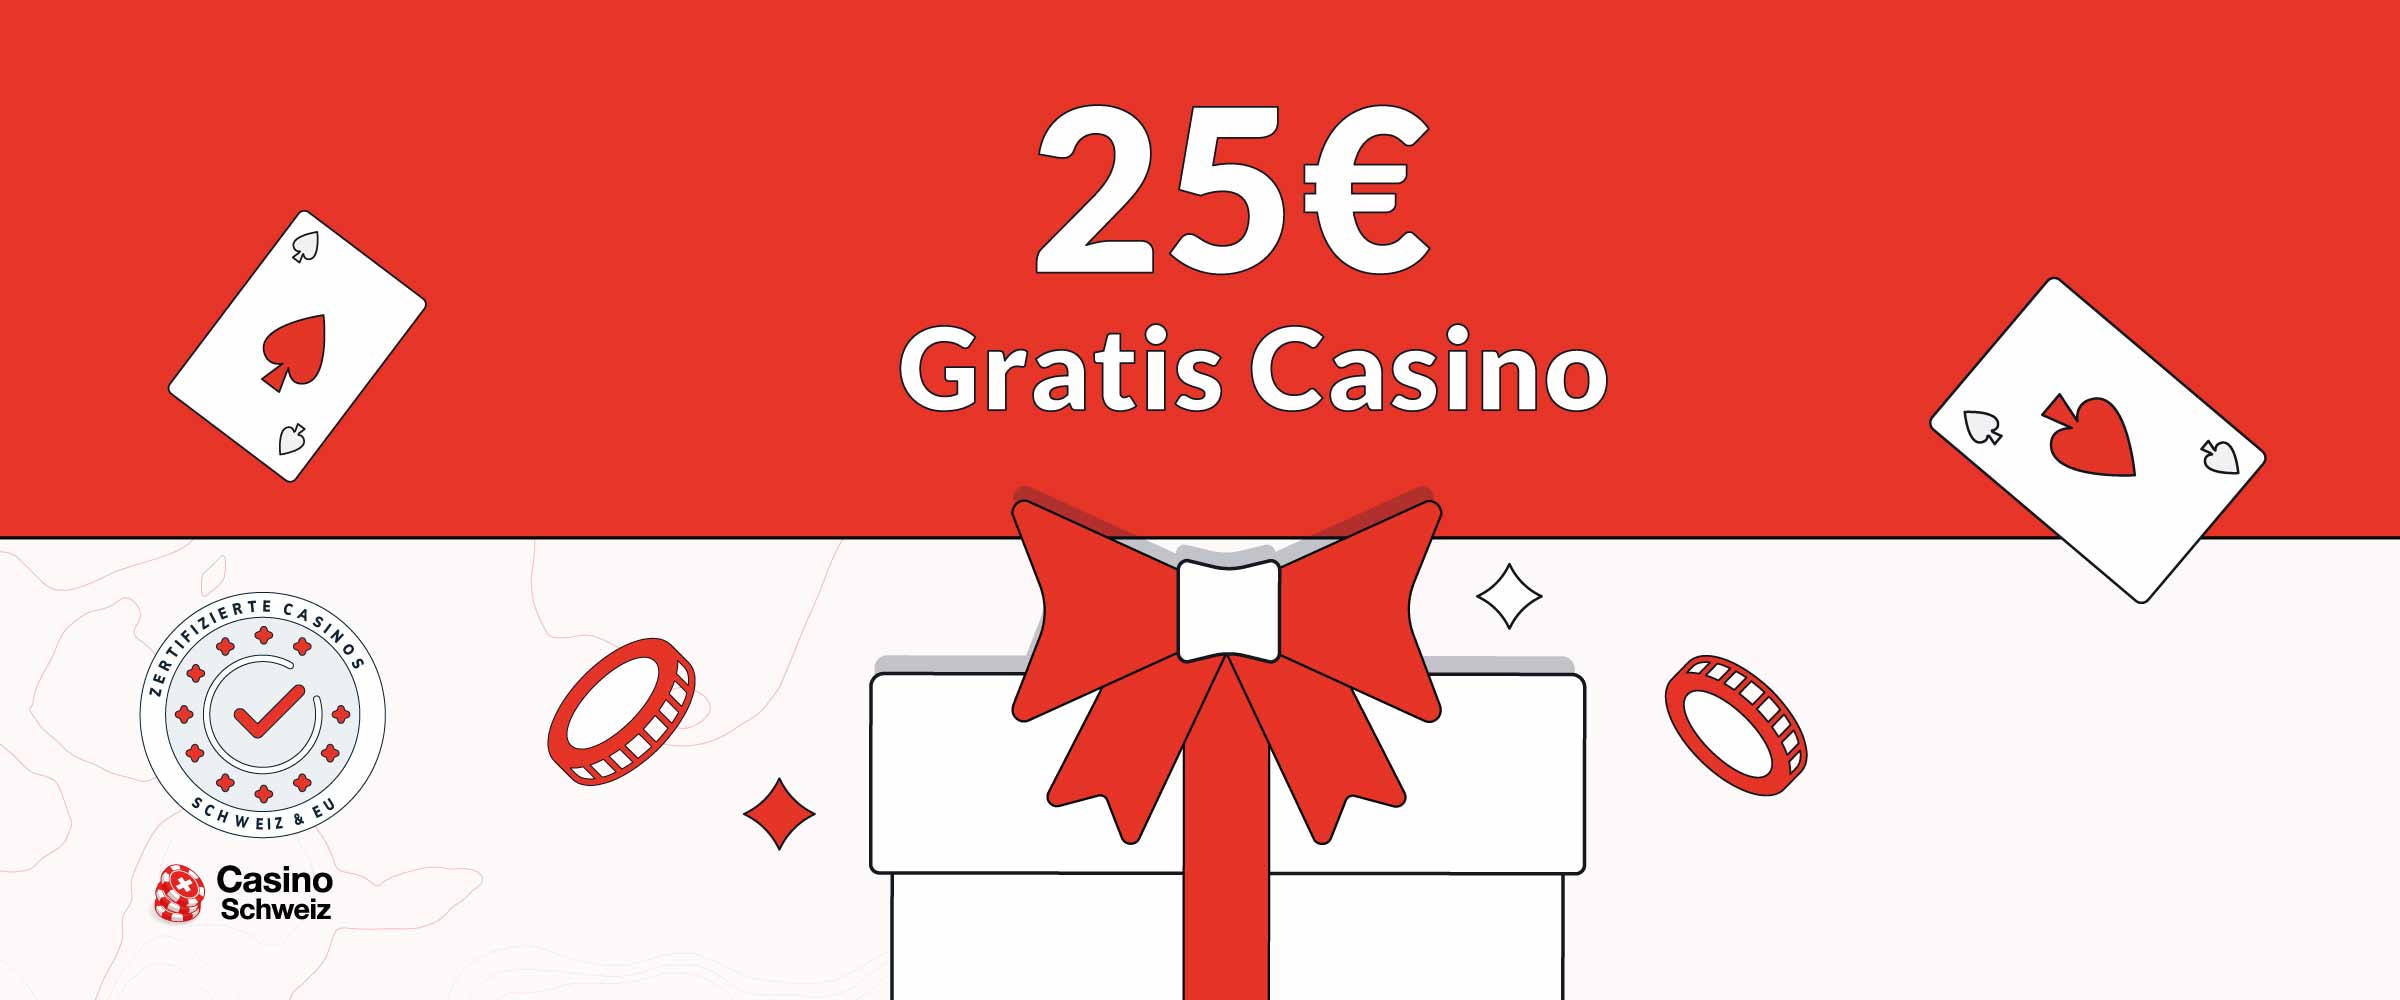 25€ Gratis Casino Bonus